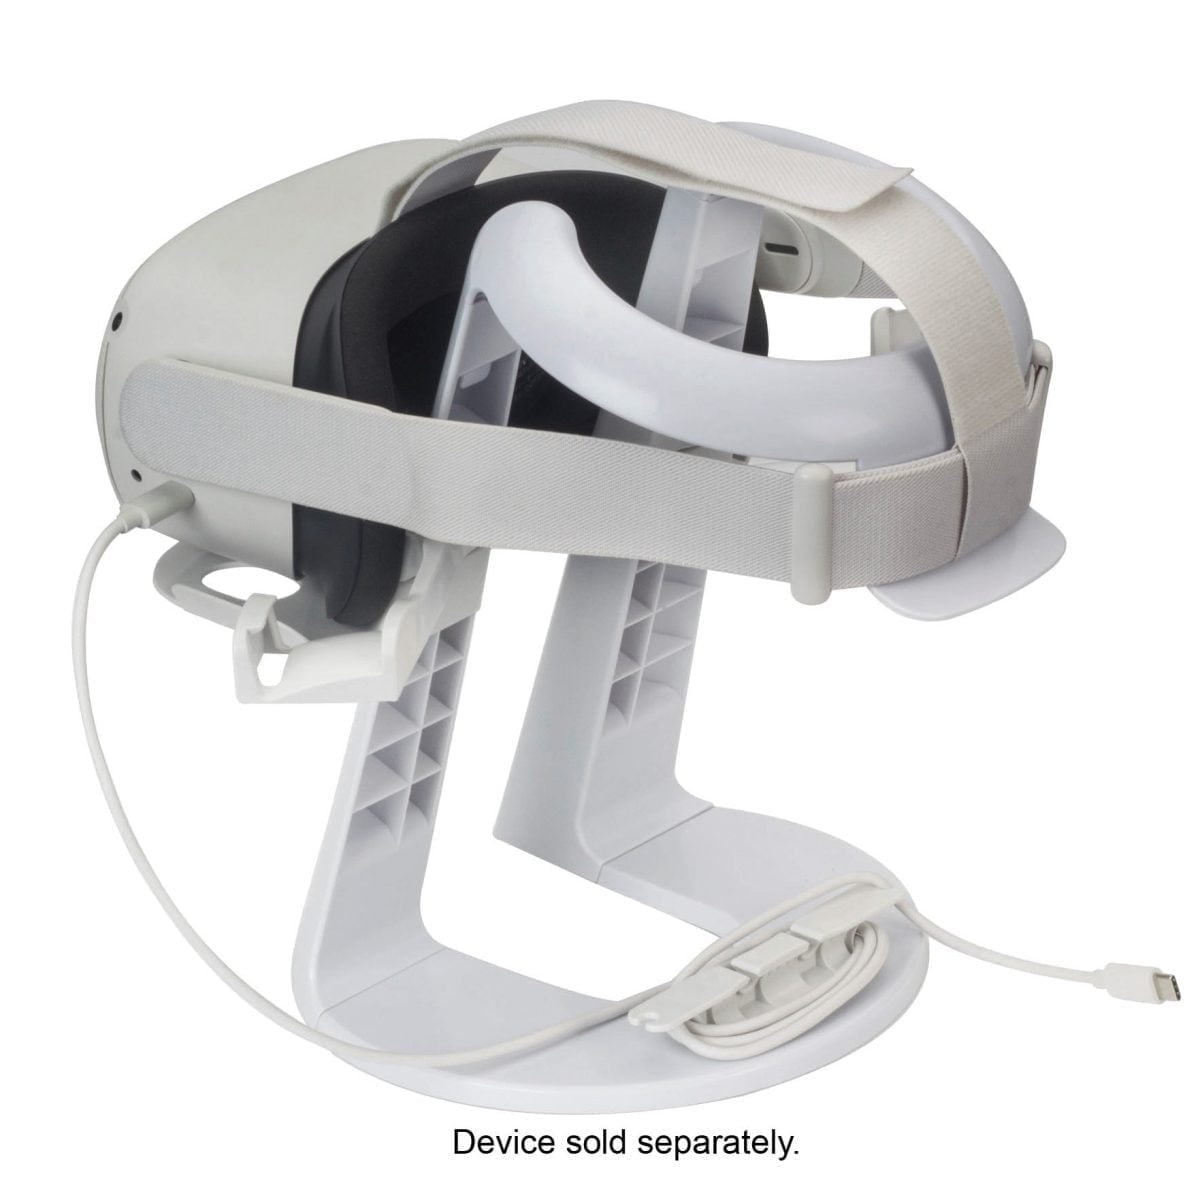 6473847Cv16D &Lt;H1&Gt;الوقوف لأكيولوس - أبيض&Lt;/H1&Gt;
تم تصميم حامل Insignia Oculus خصيصًا لعرض وتخزين سماعات الرأس Oculus Vr ووحدات التحكم باللمس. تم تصميم هذا الحامل بقاعدة مانعة للانزلاق ، وهو آمن ومستقر لتخزين وتنظيم سماعة رأس الواقع الافتراضي ووحدات التحكم والكابلات. متوافق مع معظم أنظمة الواقع الافتراضي بما في ذلك سلسلة Oculus (Oculus Rift / Rift S / Quest / Quest 2) Vr ووحدات التحكم موقف Oculus حامل إنسيجنيا لأوكولوس - أبيض